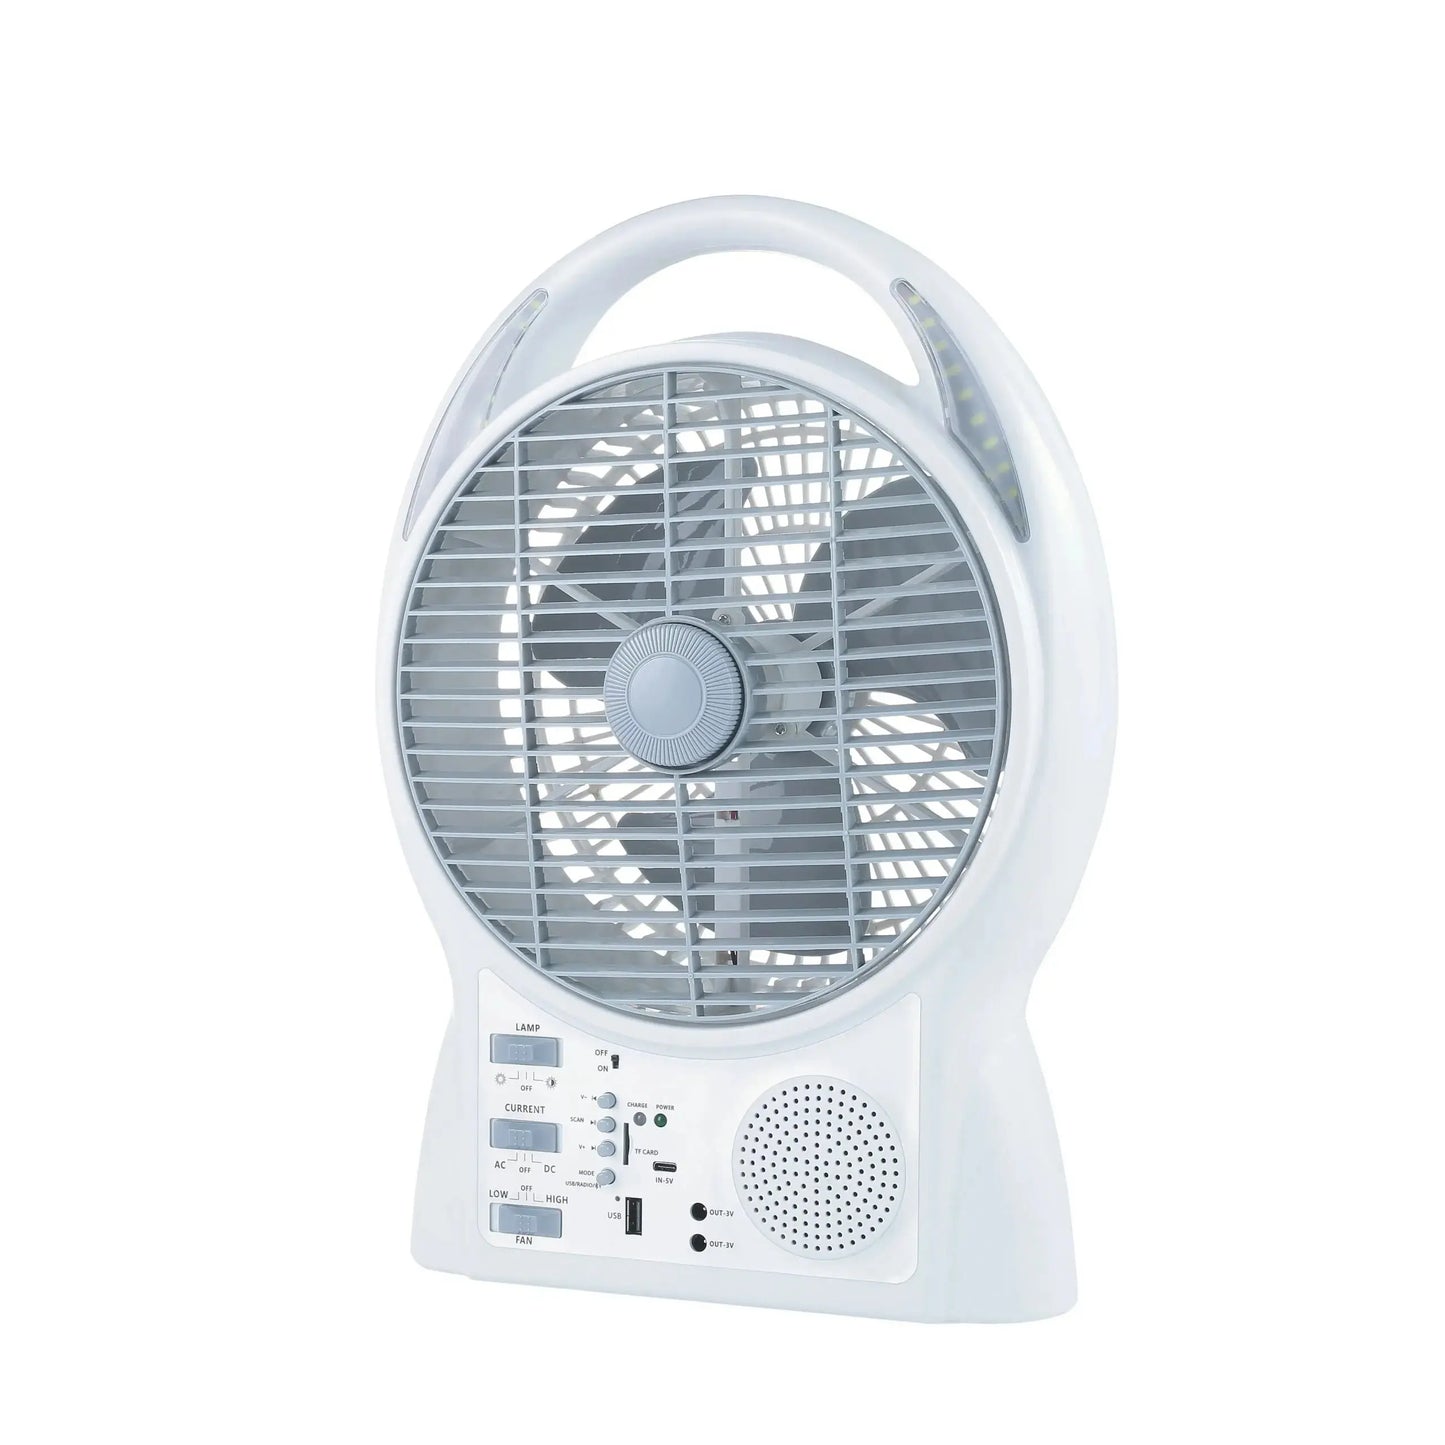 Ventilator de birou cu energie solară, Ventilator reîncărcabil cu radio FM Bluetooth și lumină LED, GD-8029